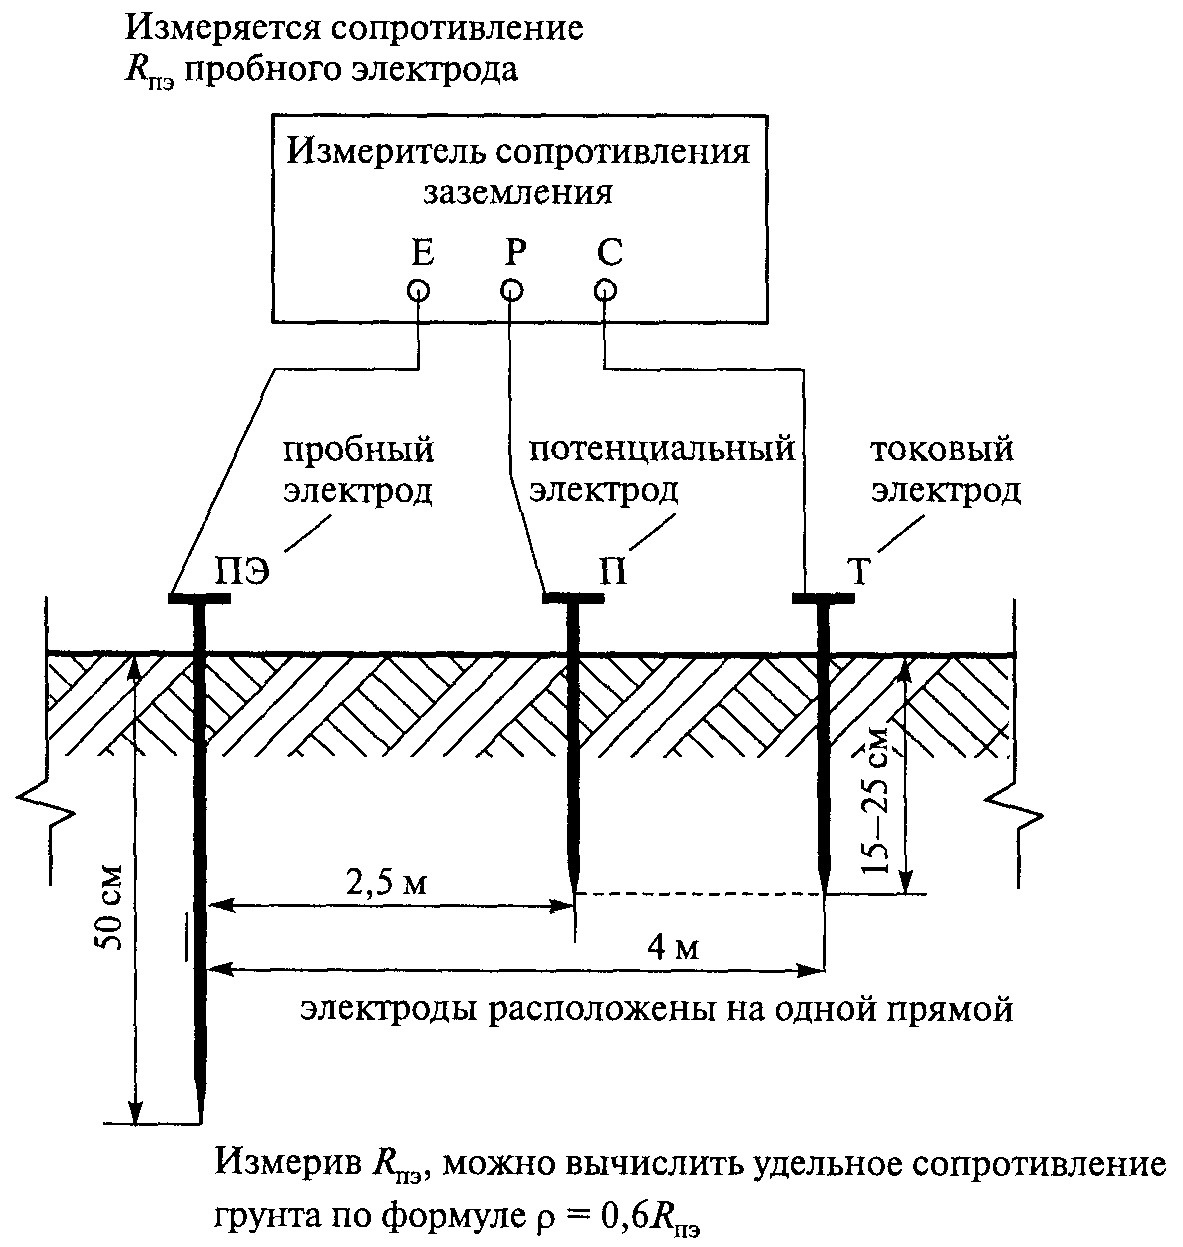 Как замерить сопротивление заземления в частном доме pvsservice.ru